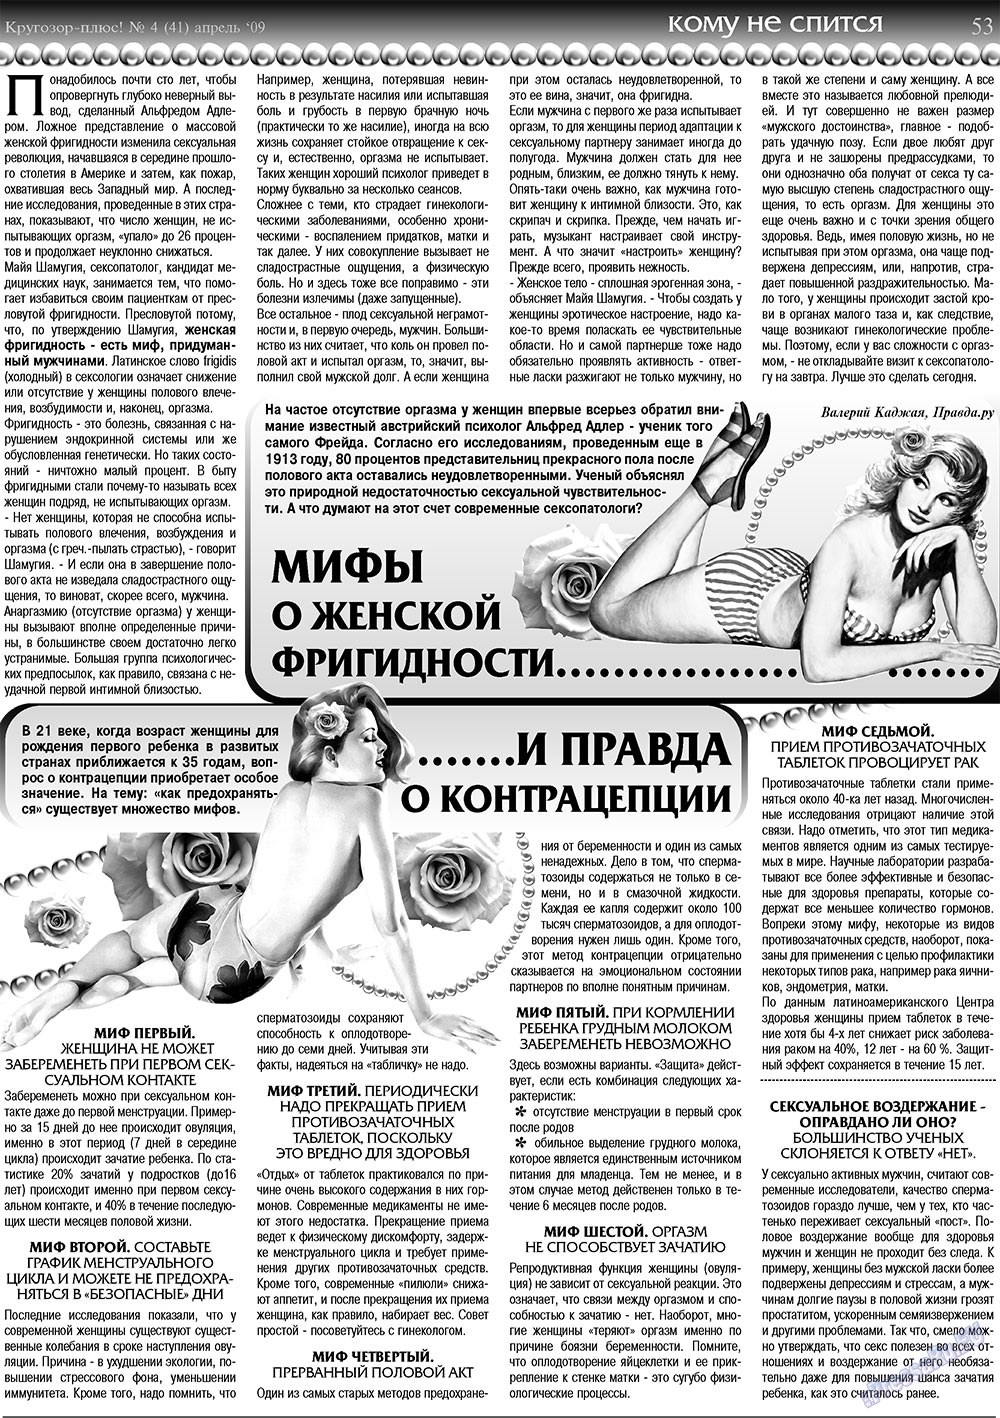 Кругозор плюс!, газета. 2009 №4 стр.53